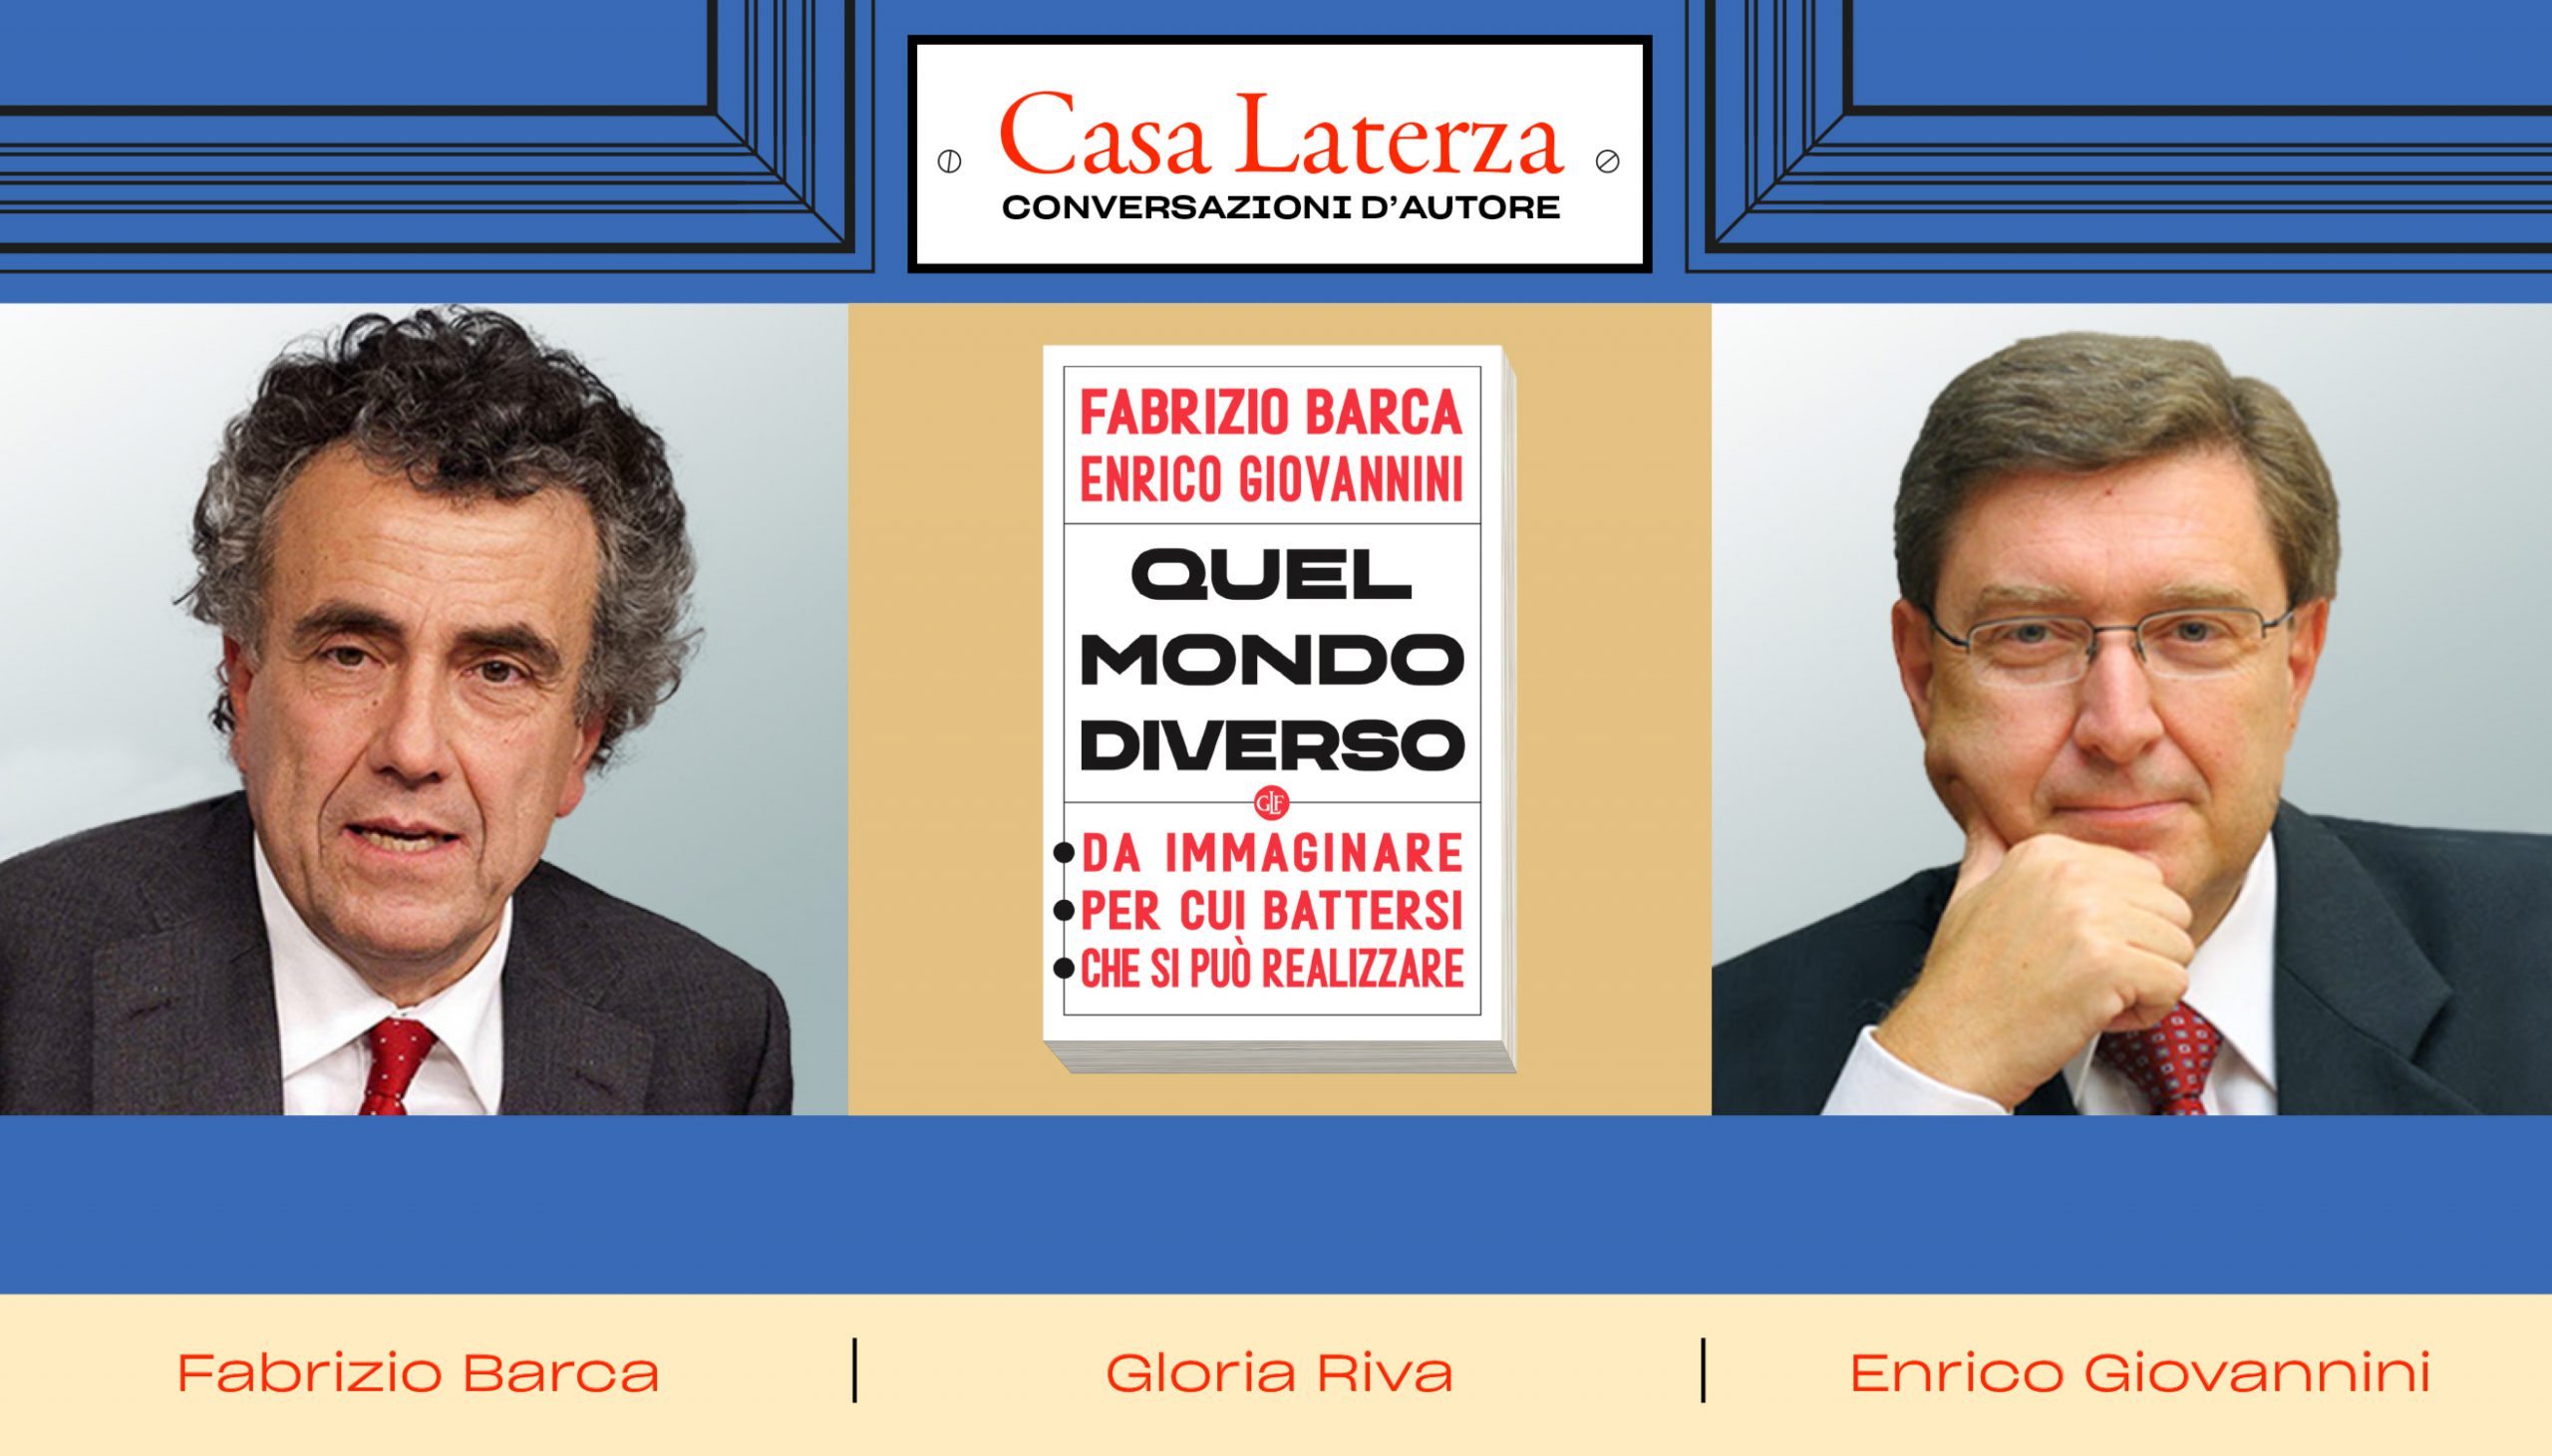 #CasaLaterza: Fabrizio Barca, Enrico Giovannini e “quel mondo diverso”